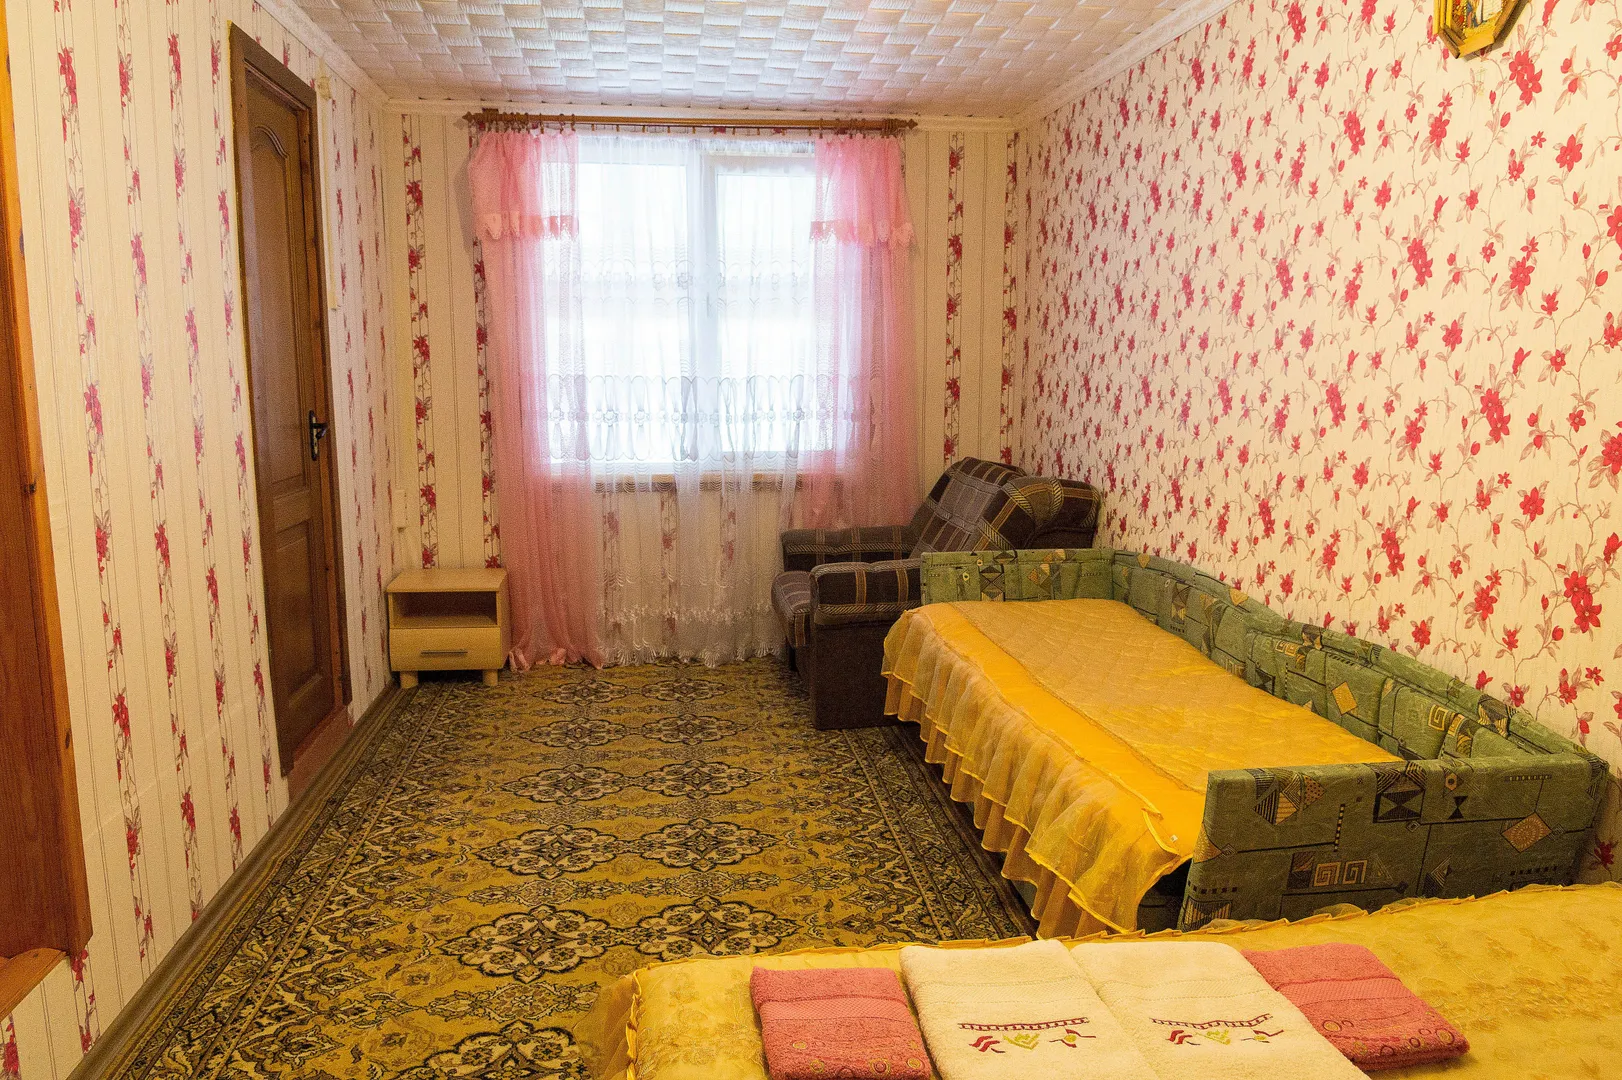 Жилая комната  с двухспальной кроватью,  кресло-кровать  и две односпальных тахты